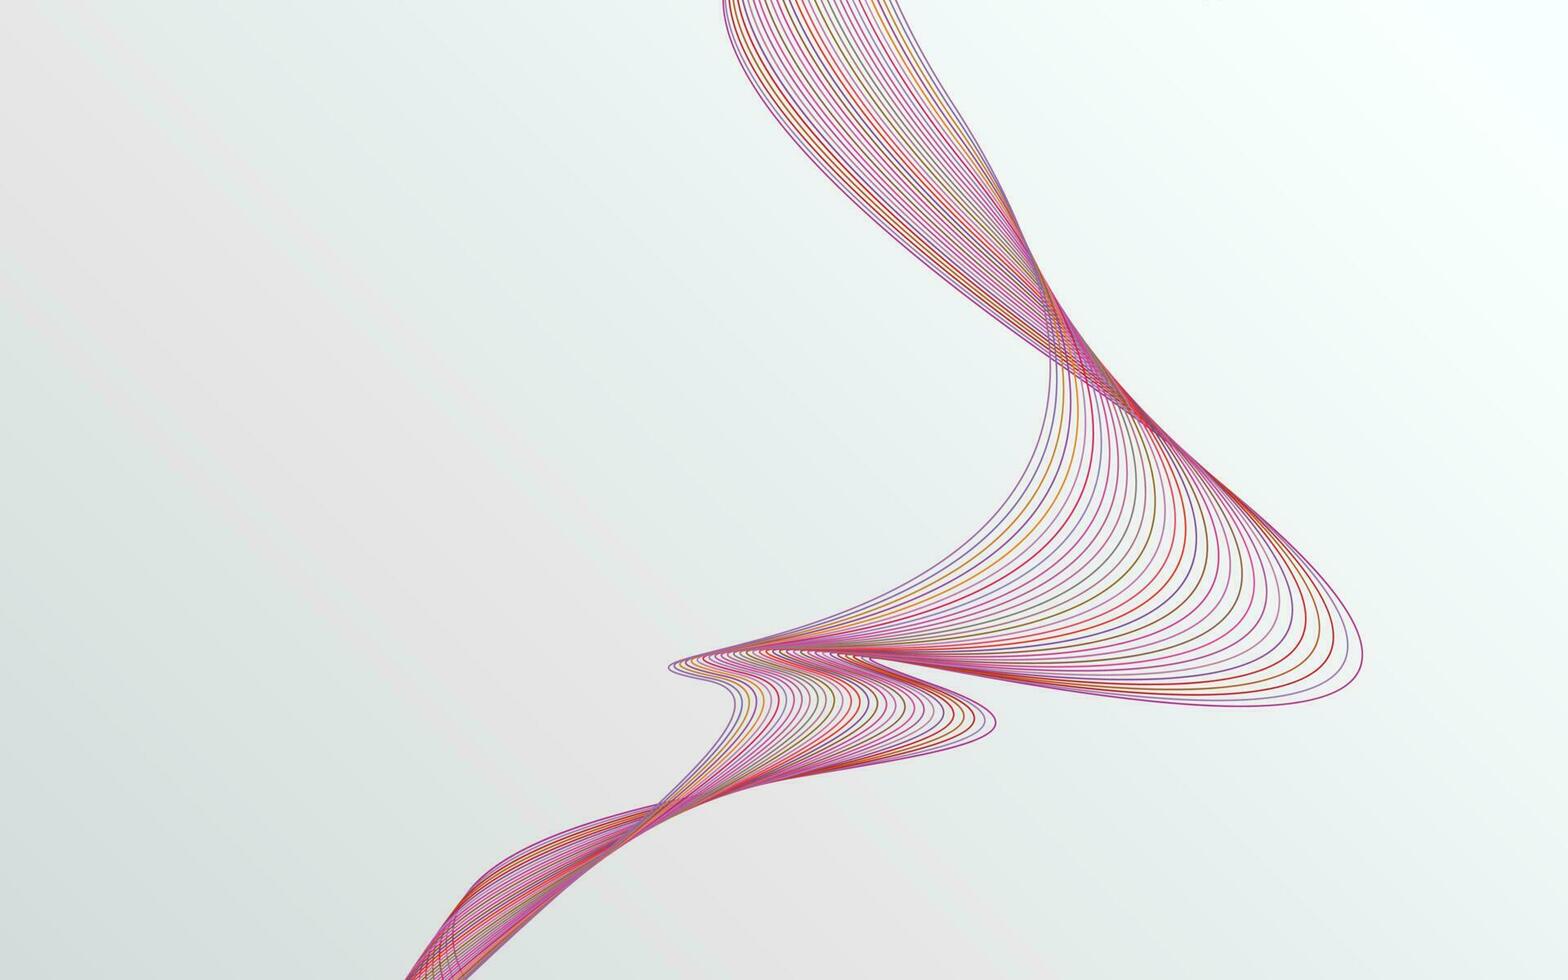 vague des nombreuses lignes colorées. abstrait rayures ondulées fond isolé vecteur